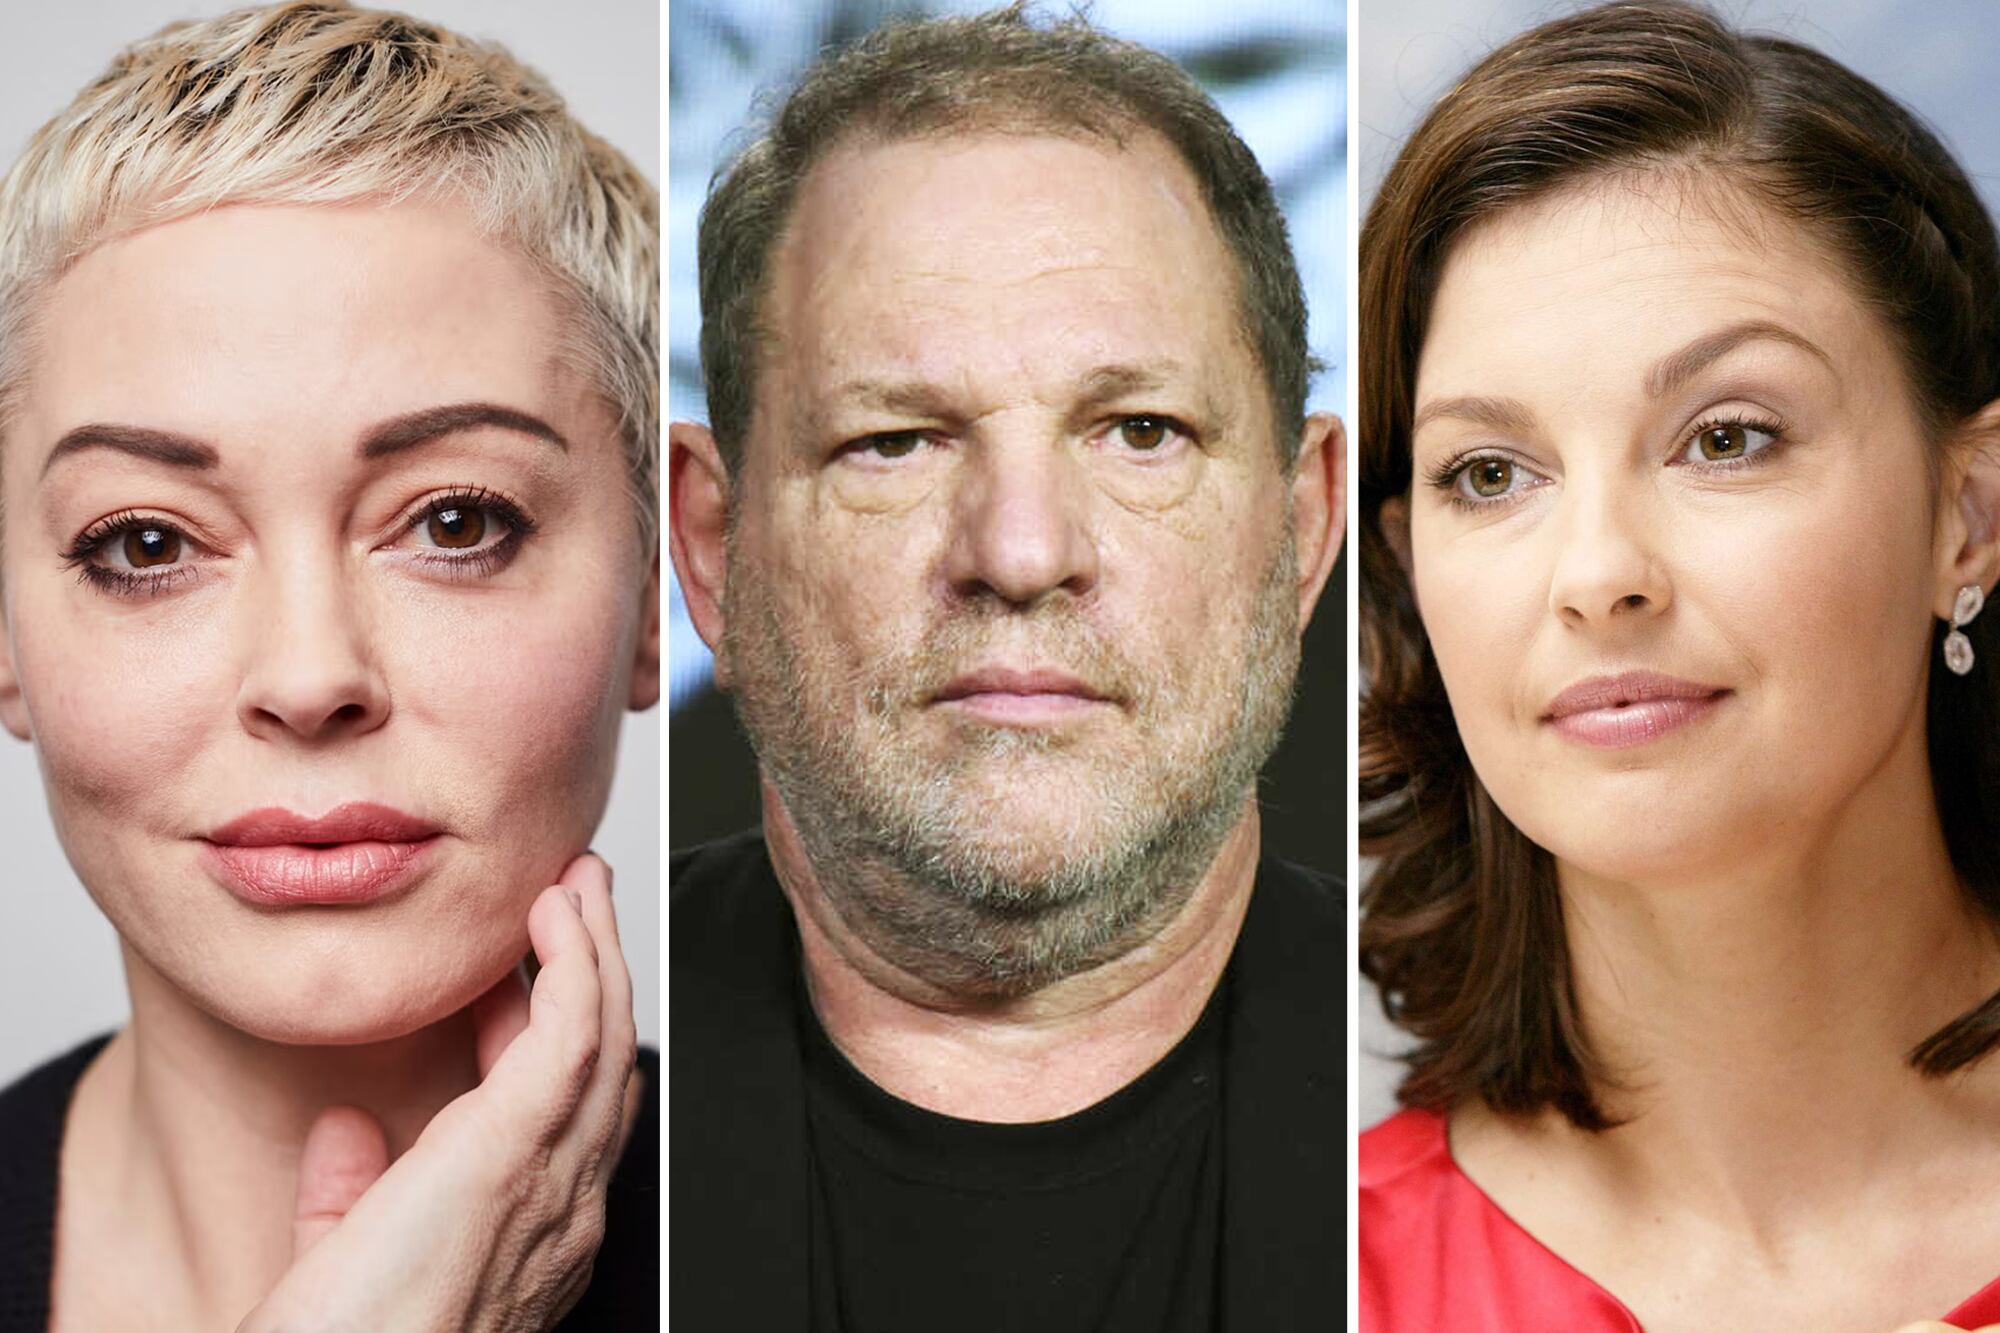 La reacción de Rose McGowan y Ashley Judd ante la anulación de la condena a Harvey Weinstein: “Traición institucional”